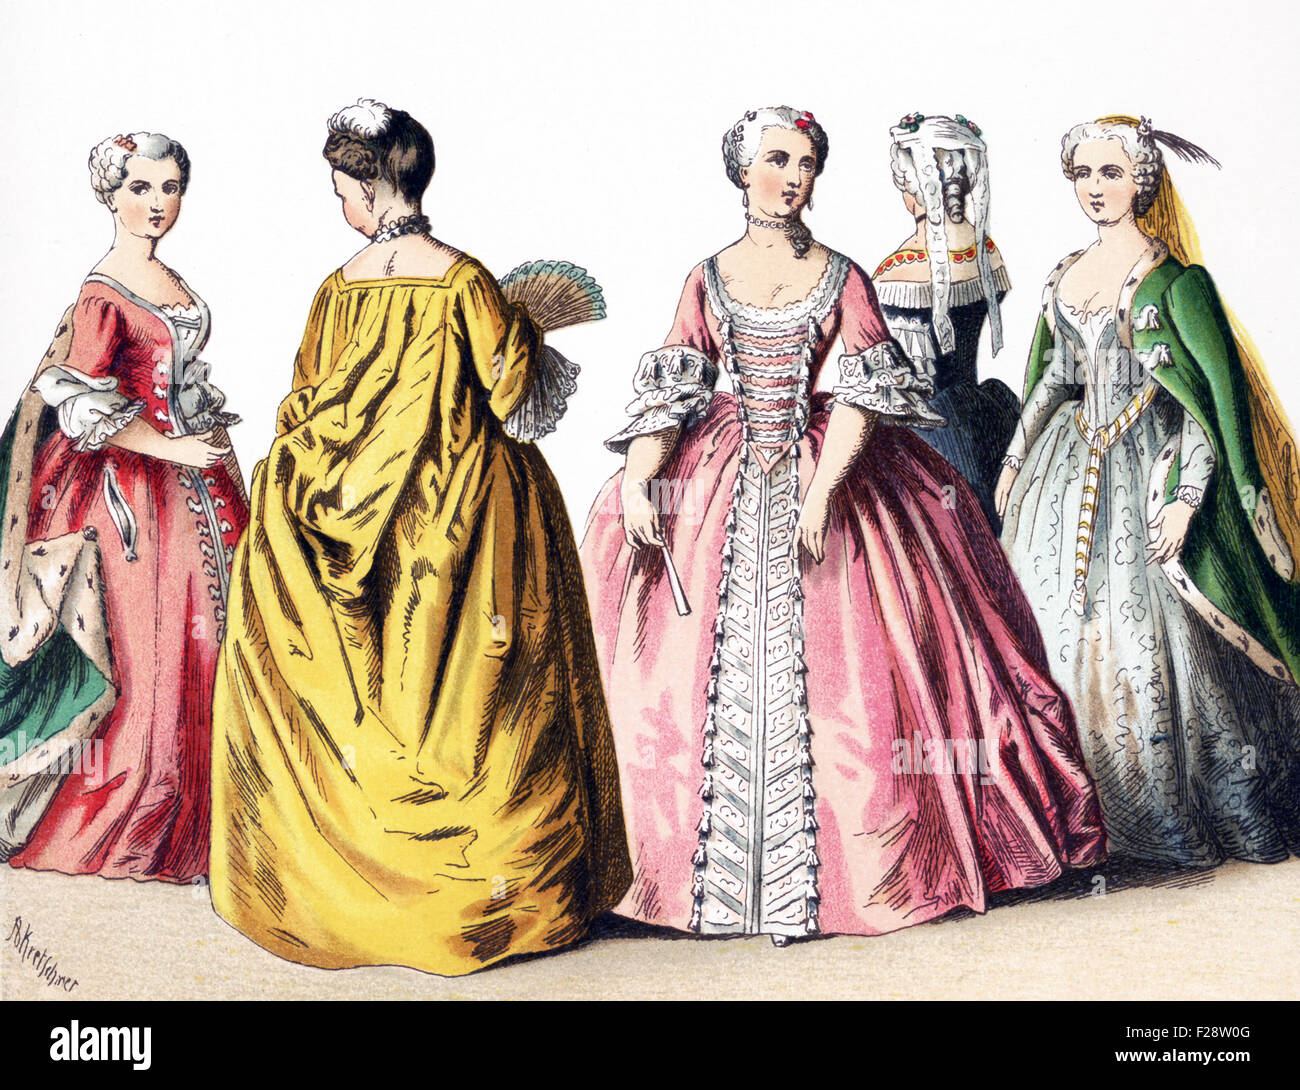 Le figure illustrate qui rappresentano il francese dame di rango di classe superiore per le donne tra il 1700 e il 1750. L'illustrazione risale al 1882. Foto Stock